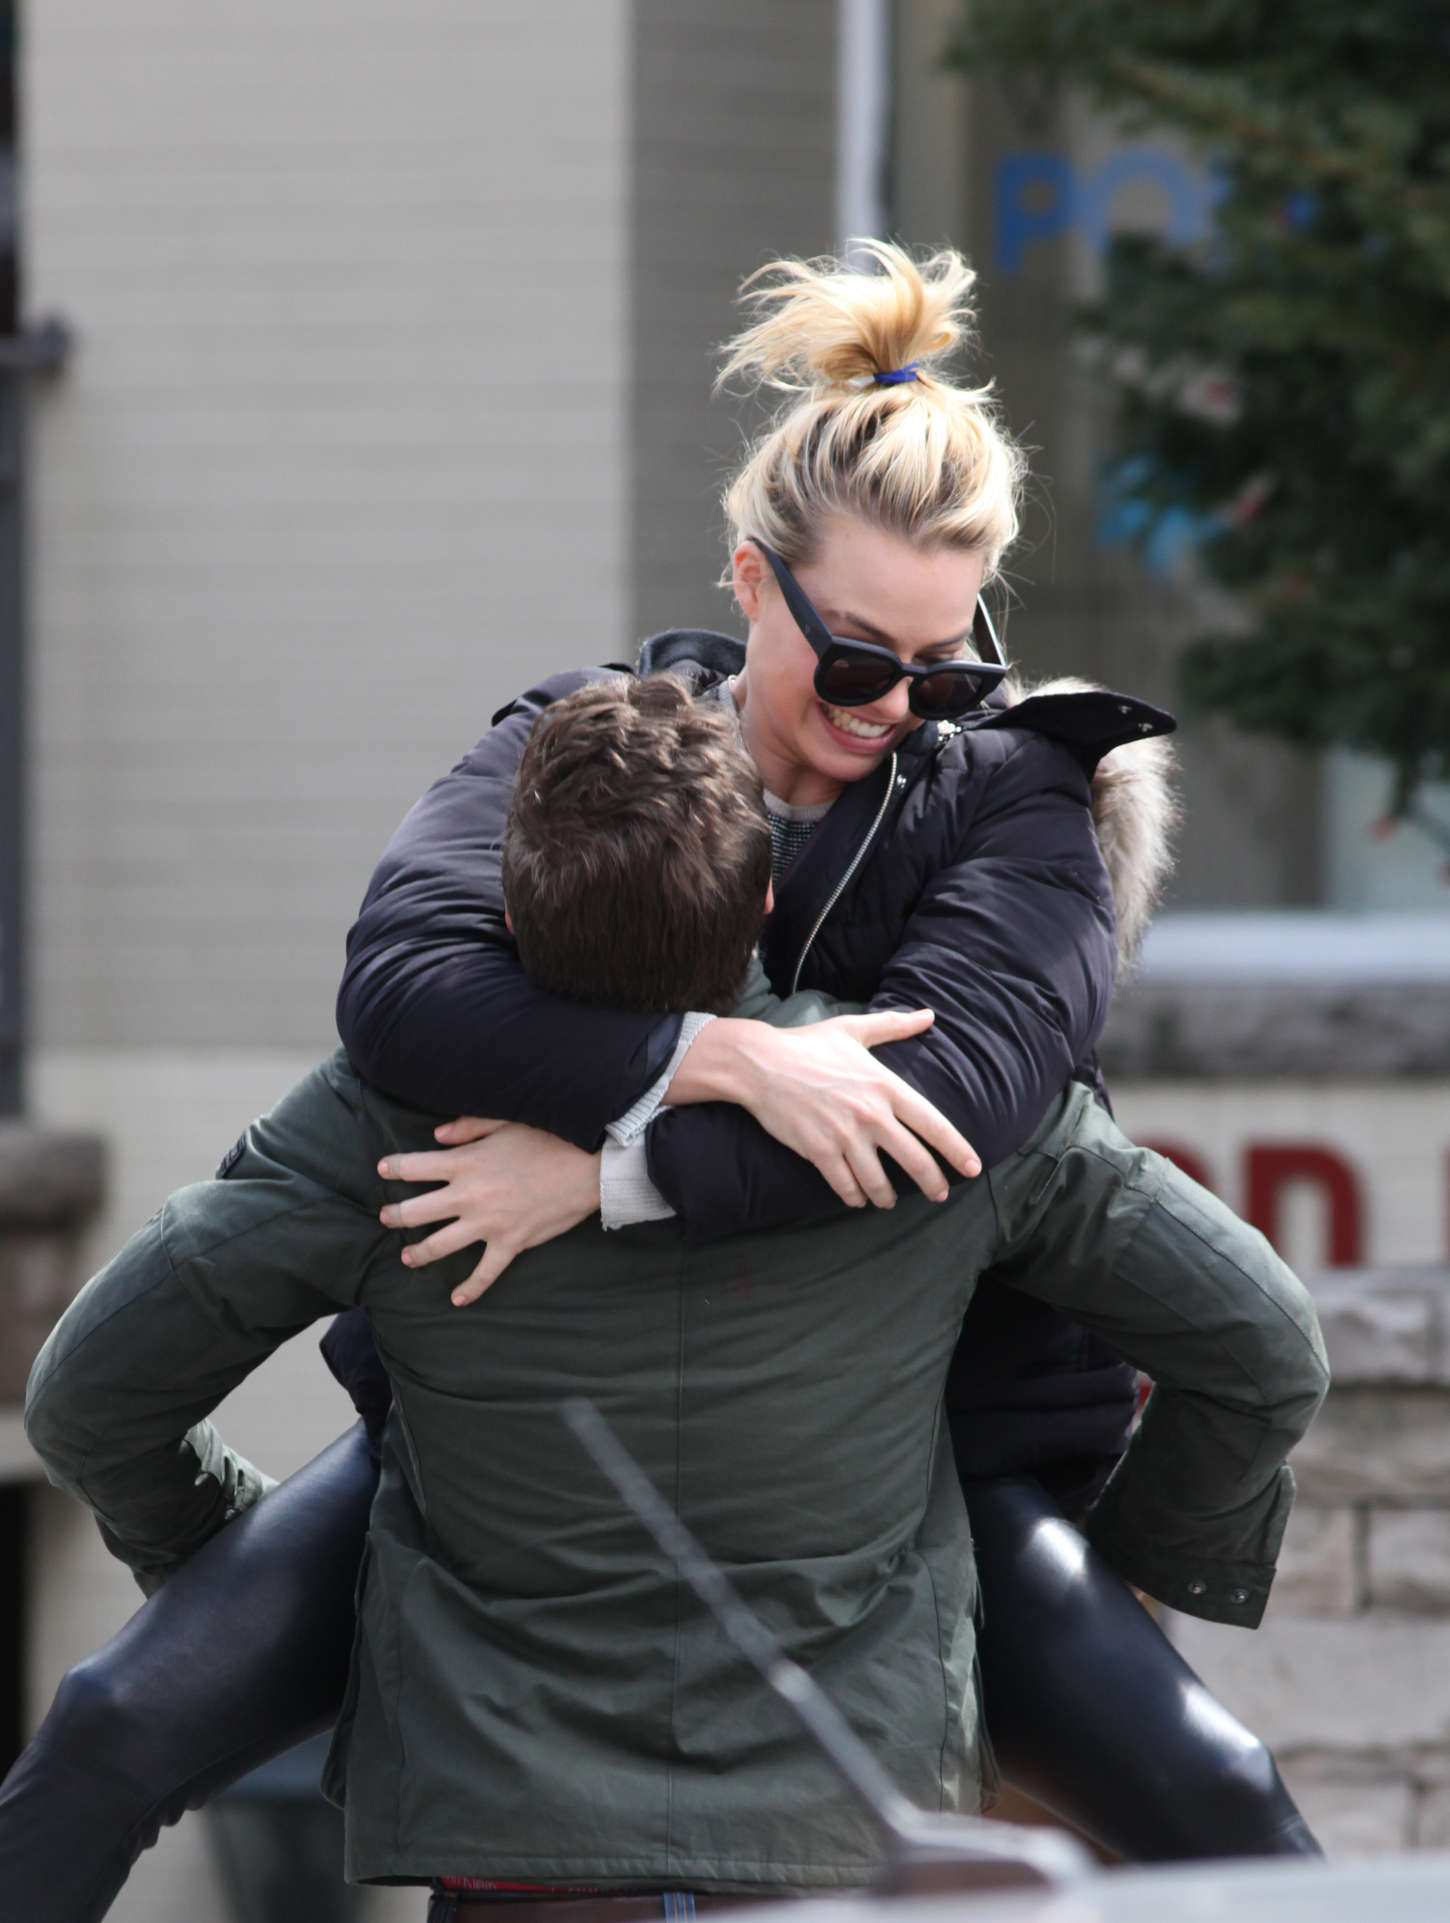 Margot Robbie jumps into her boyfriend arms